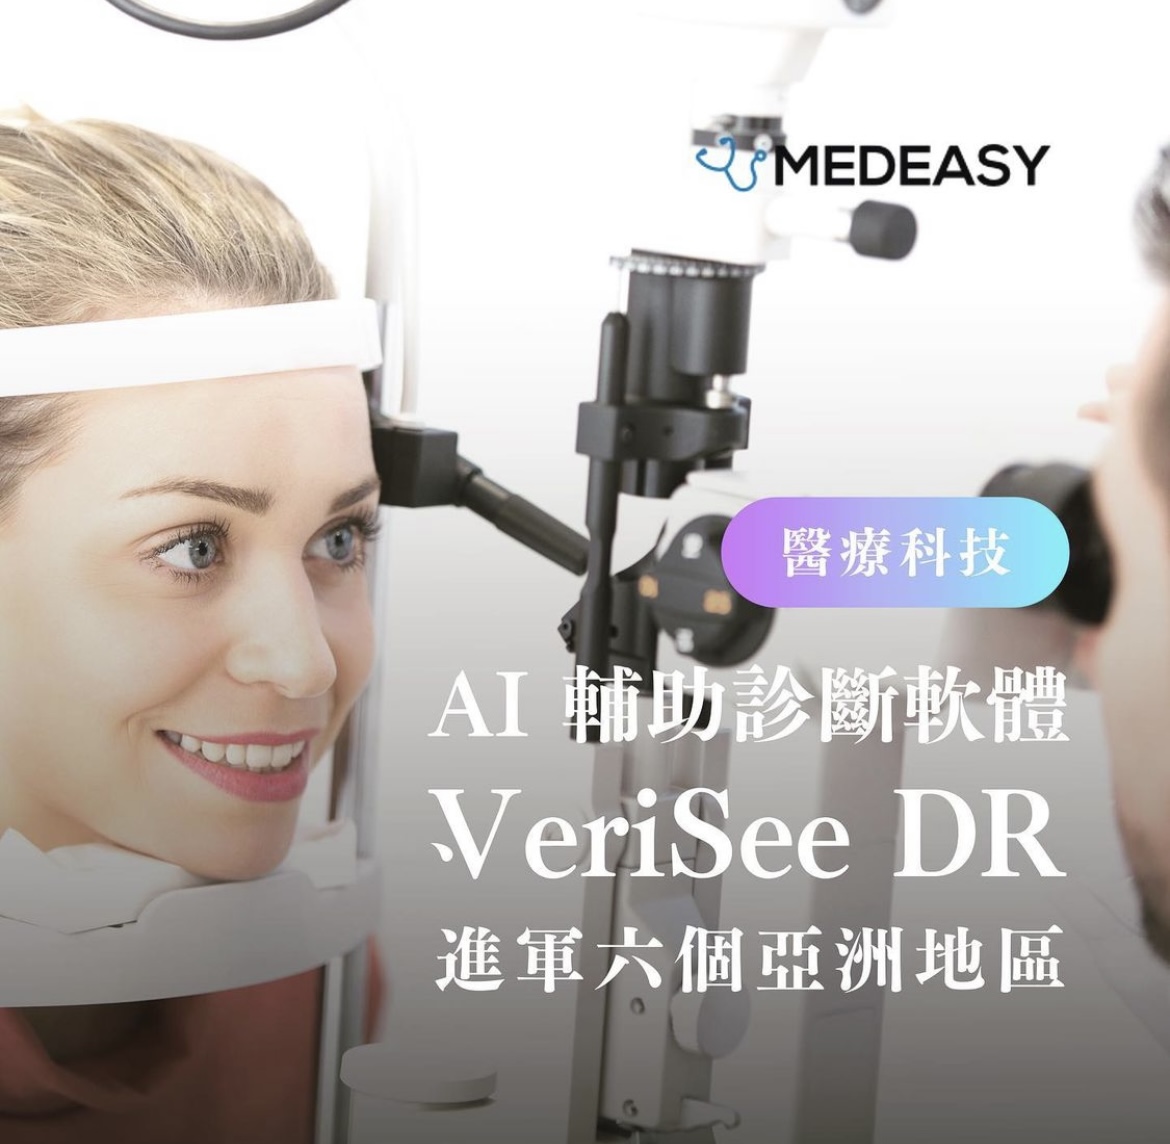 【醫療趨勢】Al輔助診斷軟體 Verisee DR進軍6個亞洲國家地區進行銷售